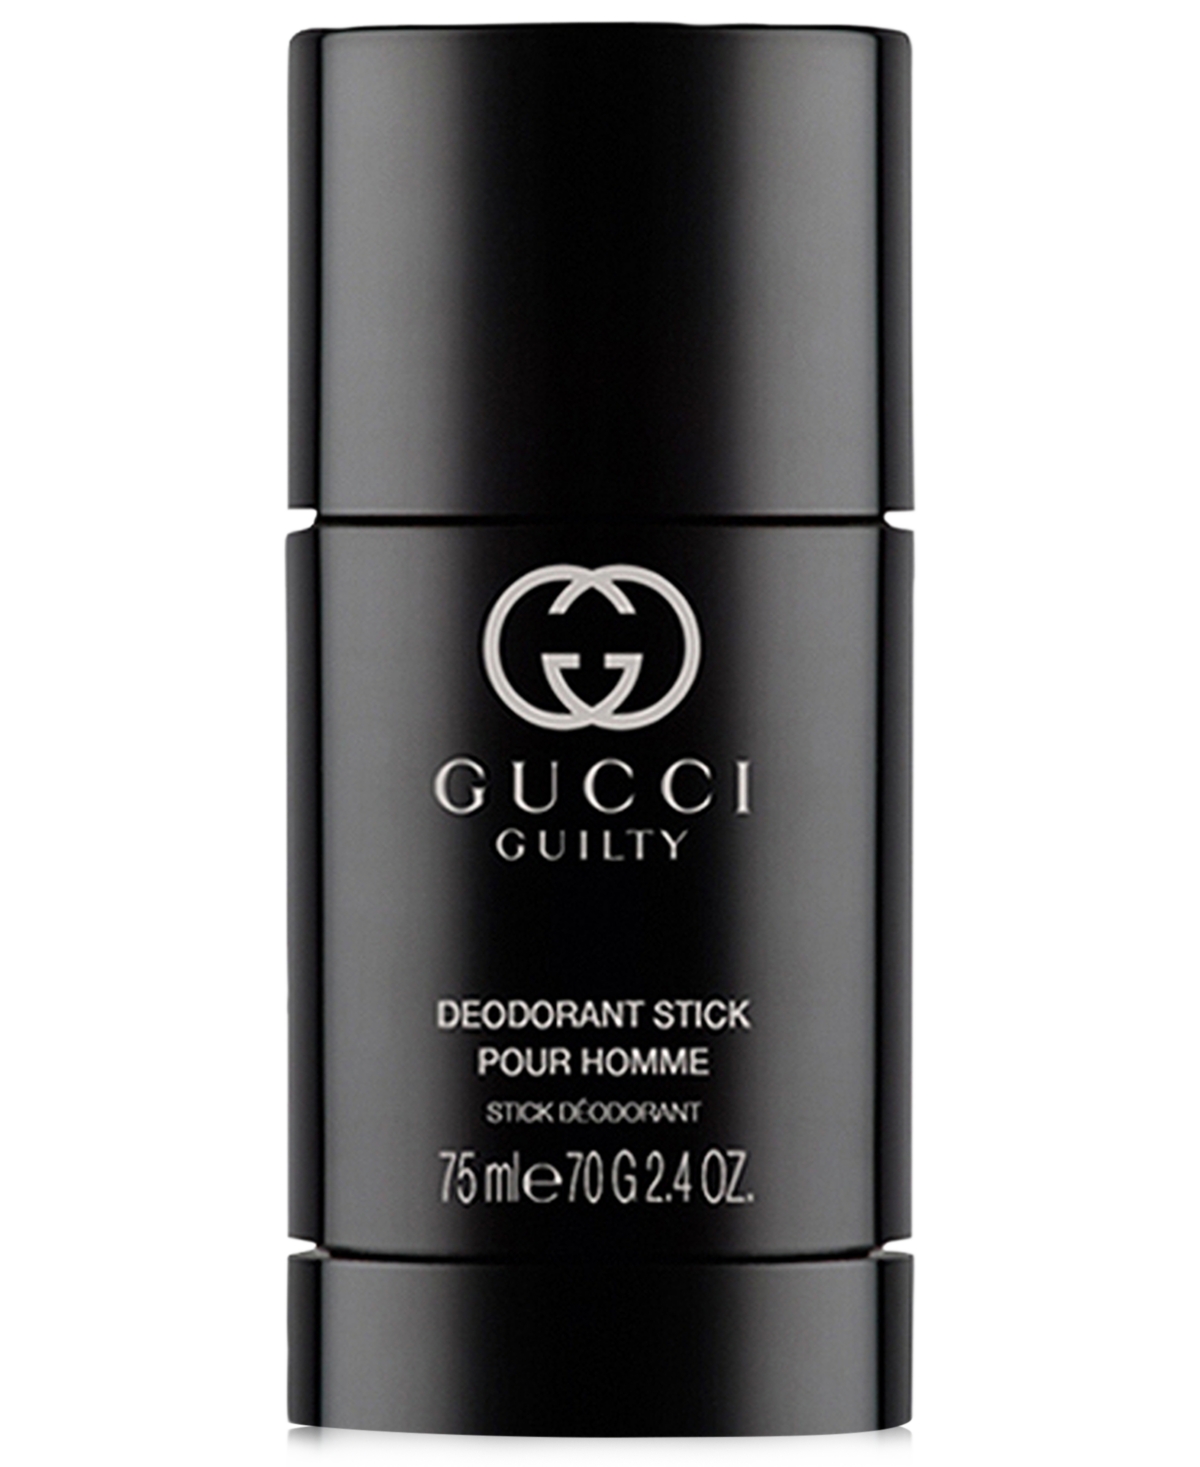 Gucci Guilty Pour Homme Deodorant Stick, 2.4 oz. Macy's